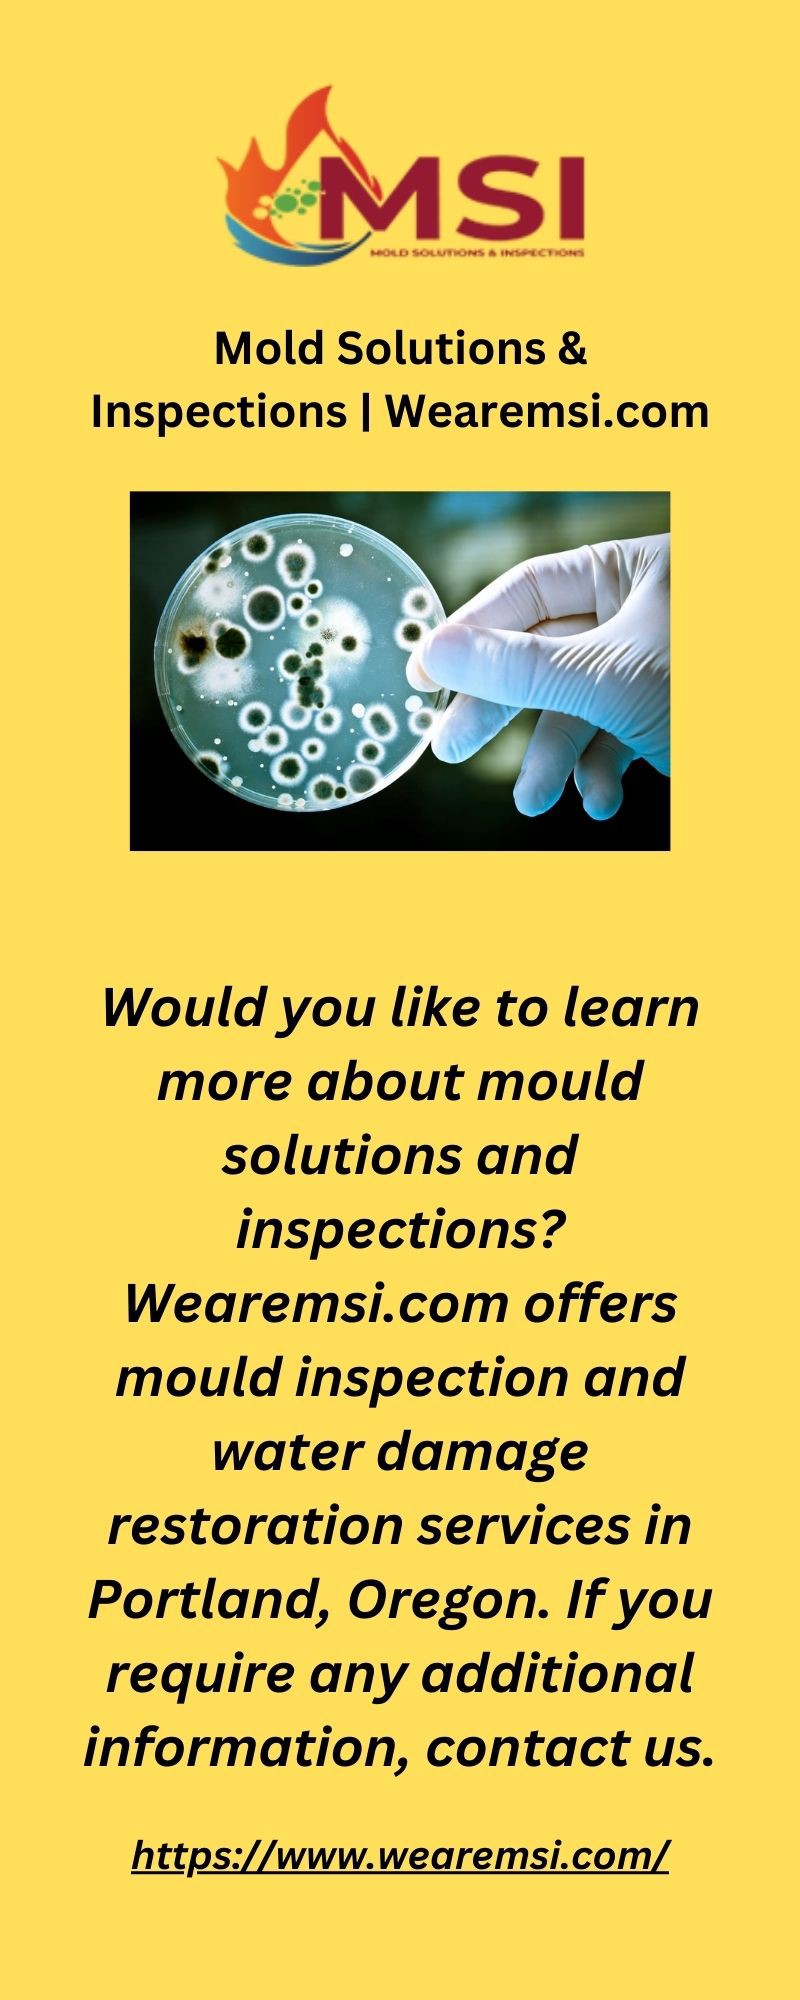 Mold Solutions & InspectionsMold Solutions & Inspections | Wearemsi.com - Mold Solutions & Inspections - Medium